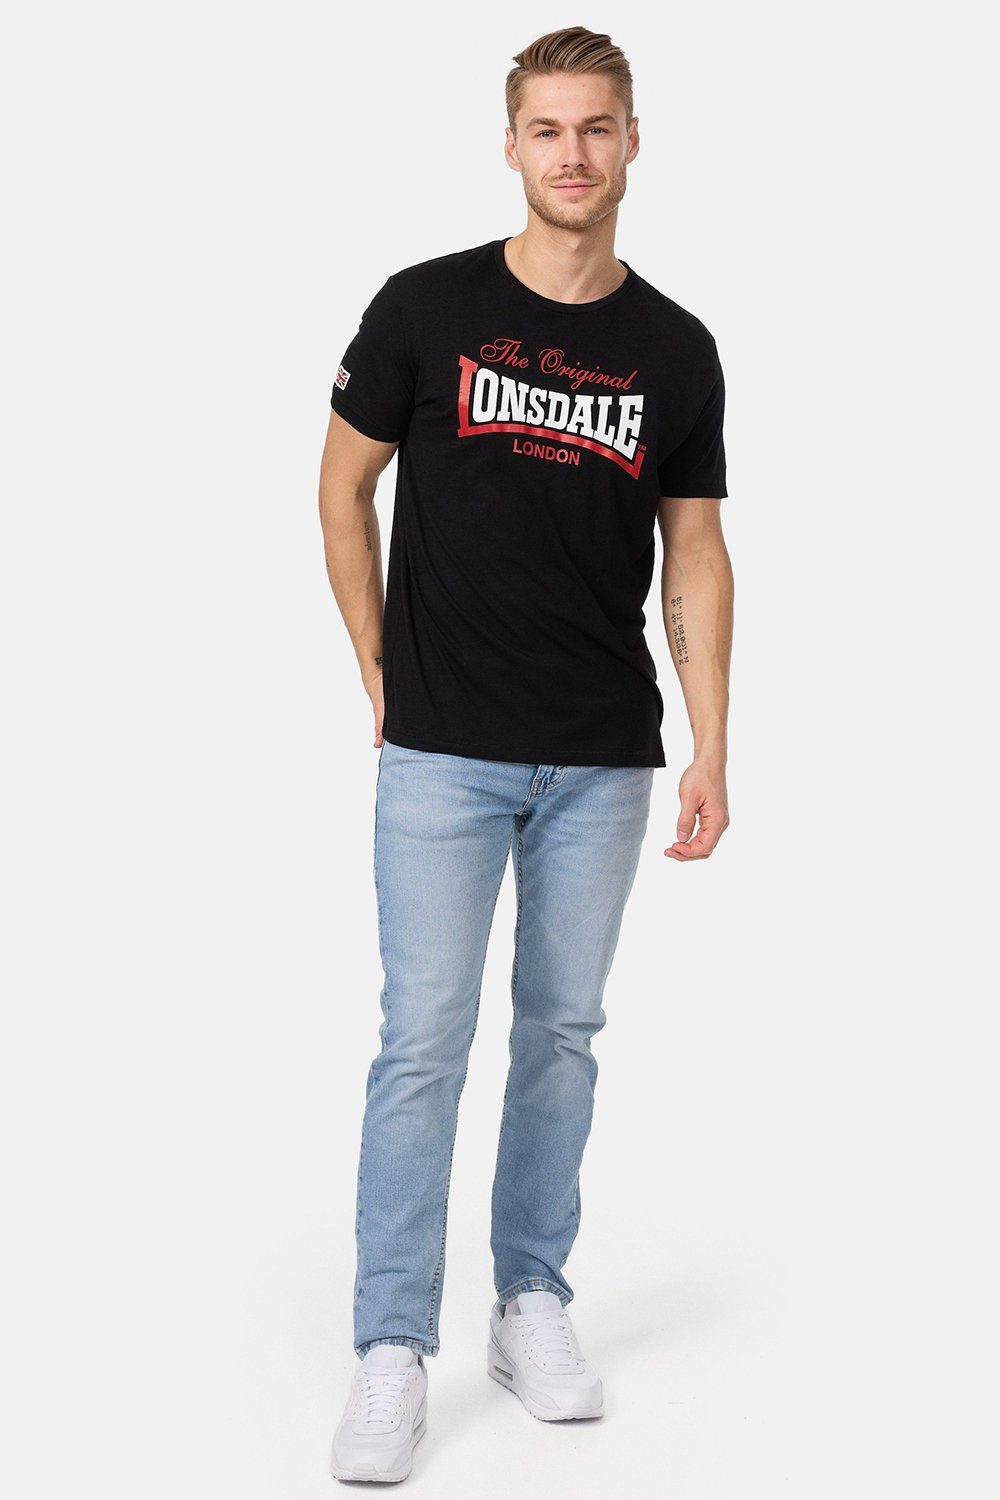 T-Shirt ALDINGHAM Black Lonsdale